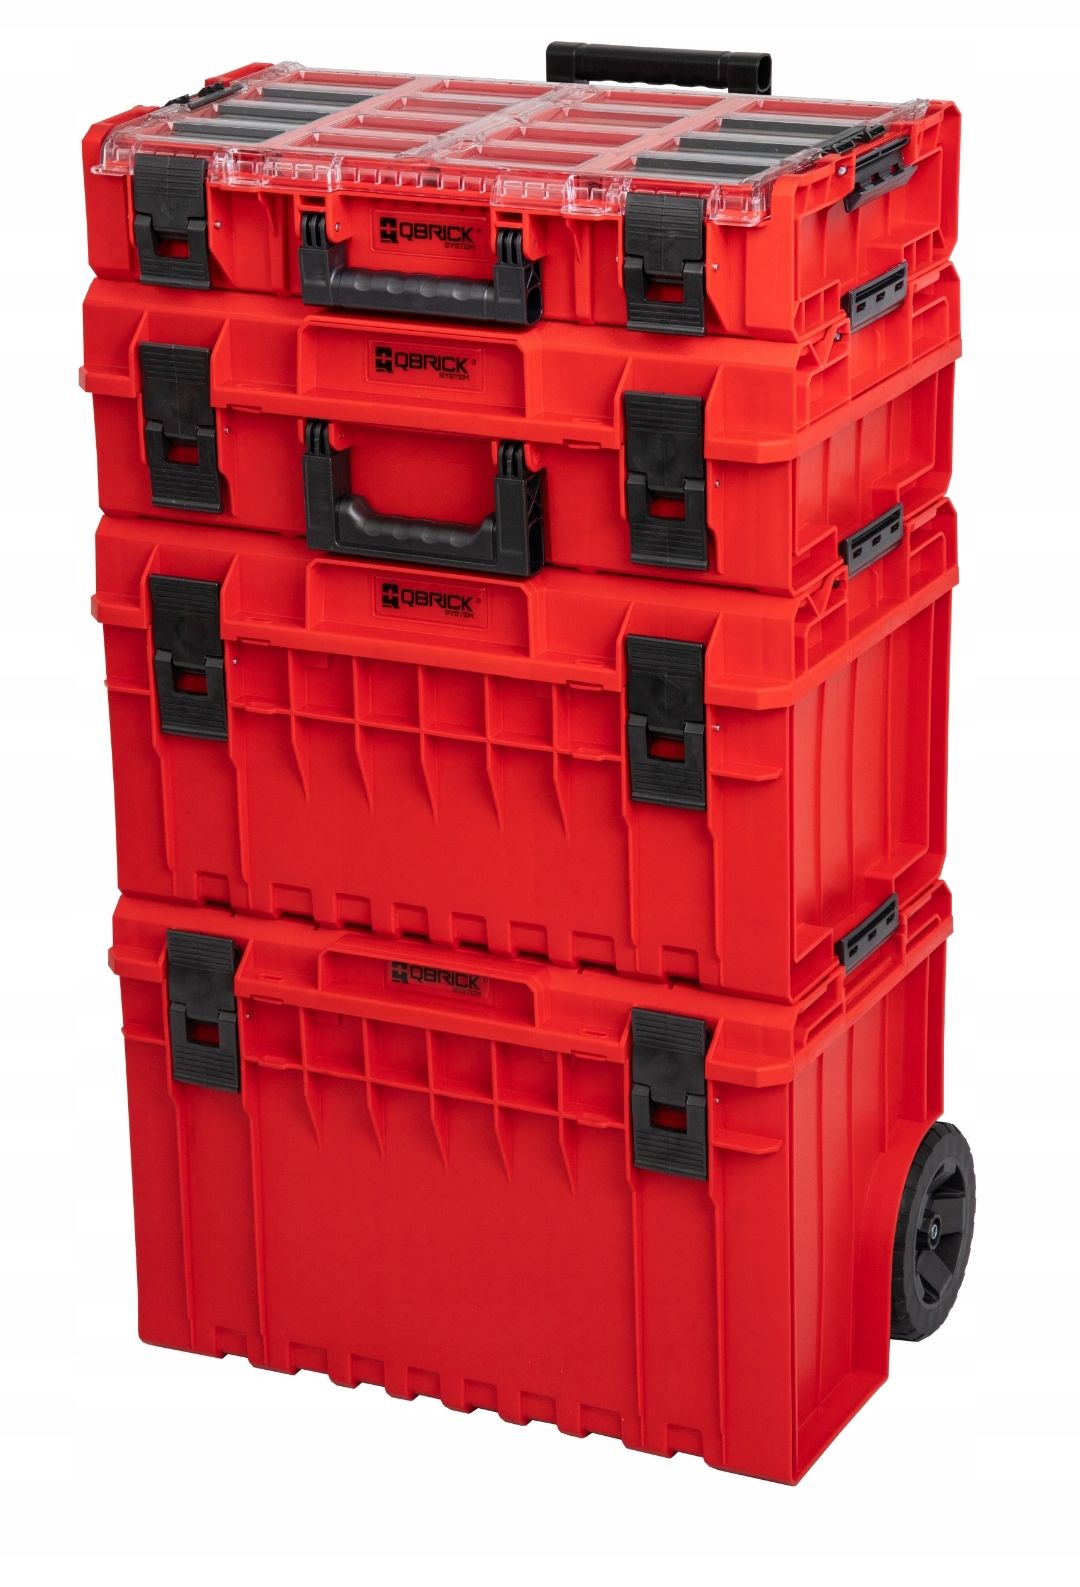 Qbrick toolbox. Qbrick ящики Pro Red. Модульные ящики для инструмента Qbrick one Red. Ящик для инструментов Qbrick System.